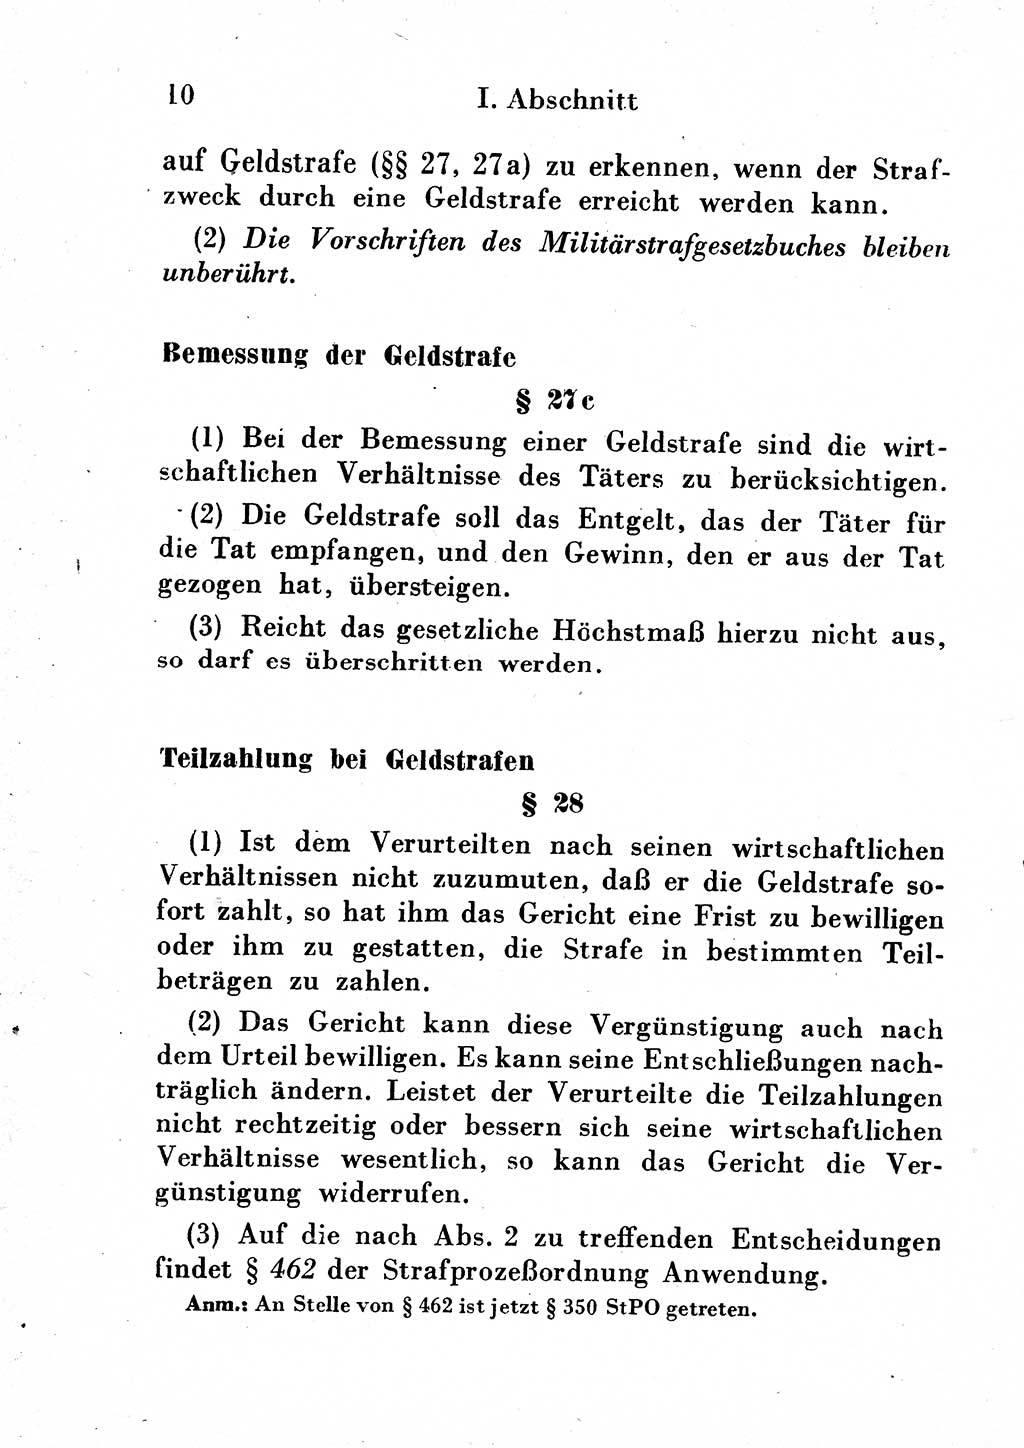 Strafgesetzbuch (StGB) und andere Strafgesetze [Deutsche Demokratische Republik (DDR)] 1954, Seite 10 (StGB Strafges. DDR 1954, S. 10)